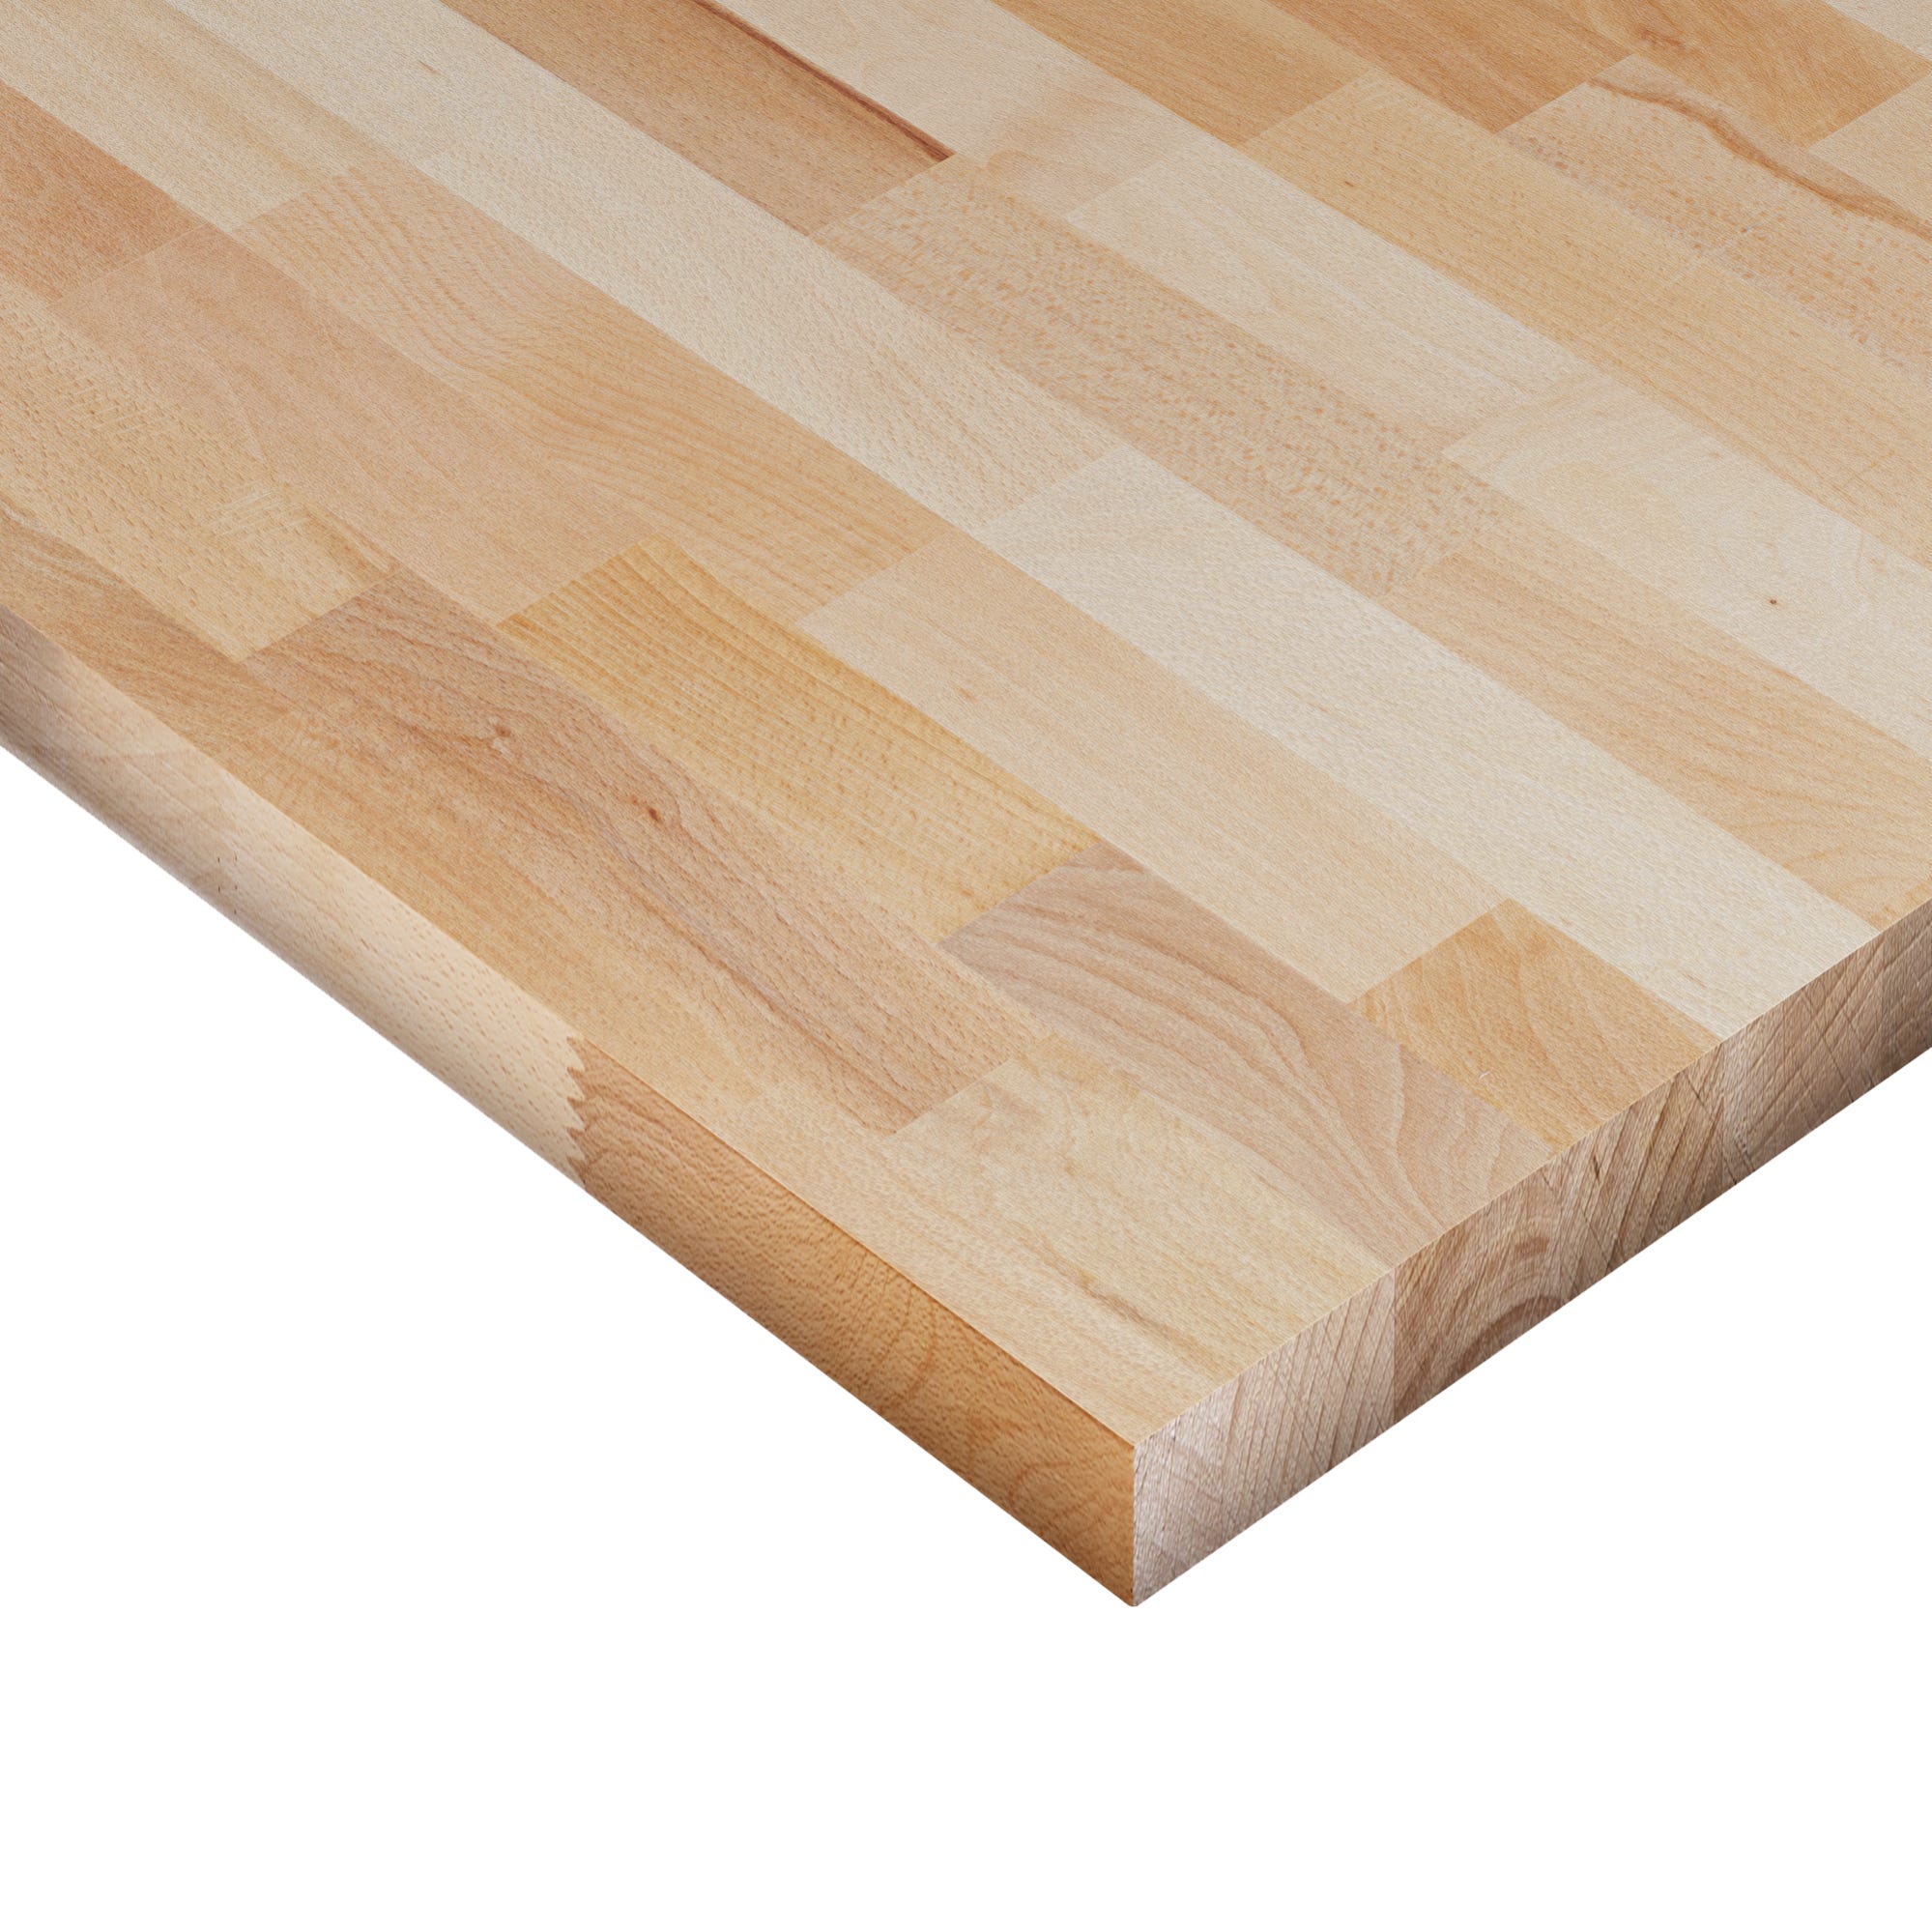 Piano cucina in legno faggio L 250 x P 65 cm, spessore 2.6 cm